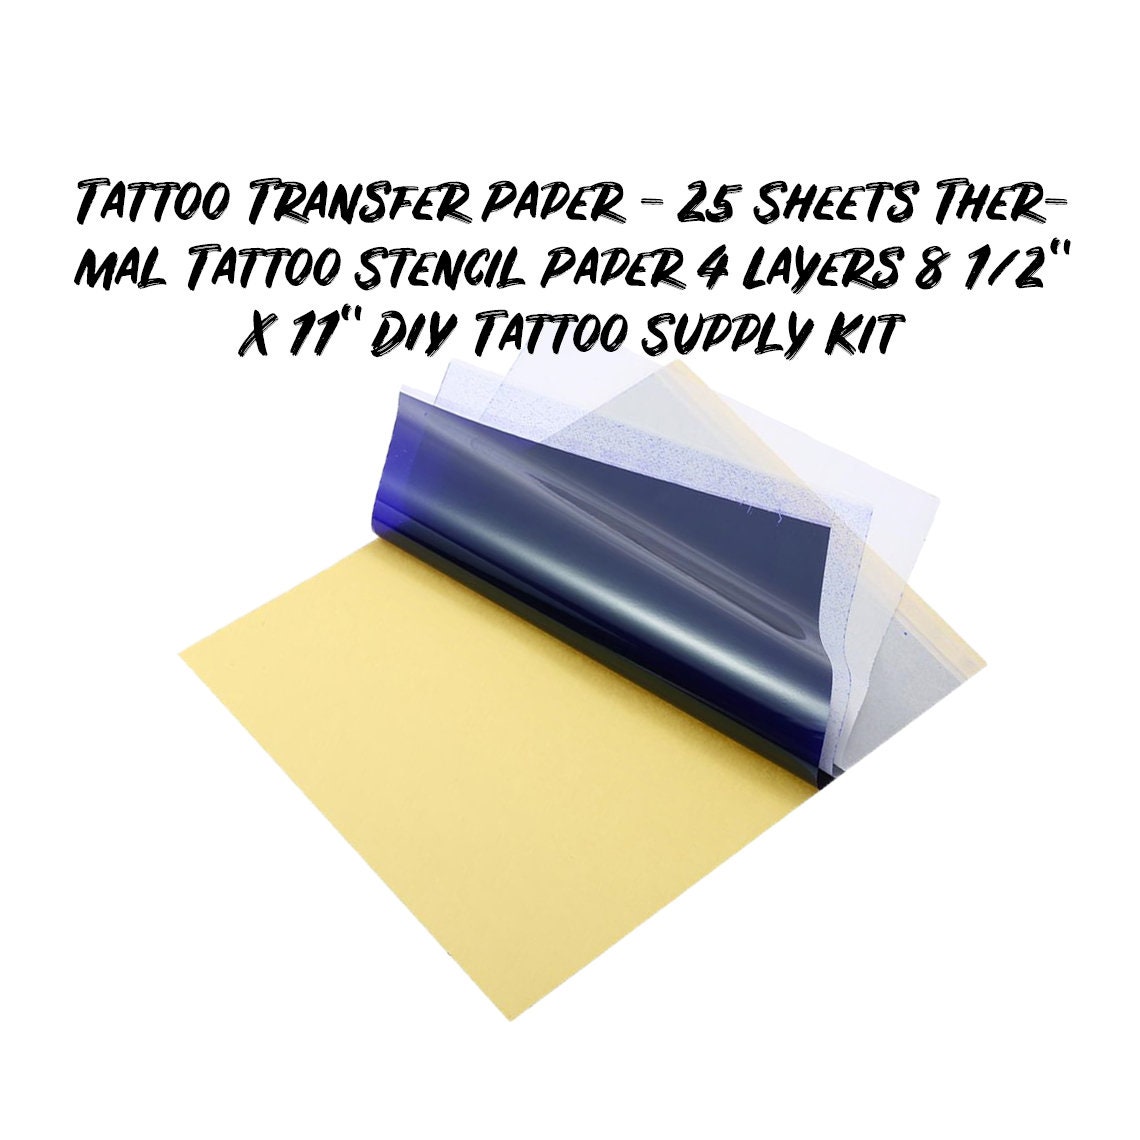 Wthree 25Pcs Tattoo Transfer Paper, Tattoo Stencil Paper 4 Layers 8.5 X  11 Thermal Transfer Paper for Tattooing Copy Carbon Paper